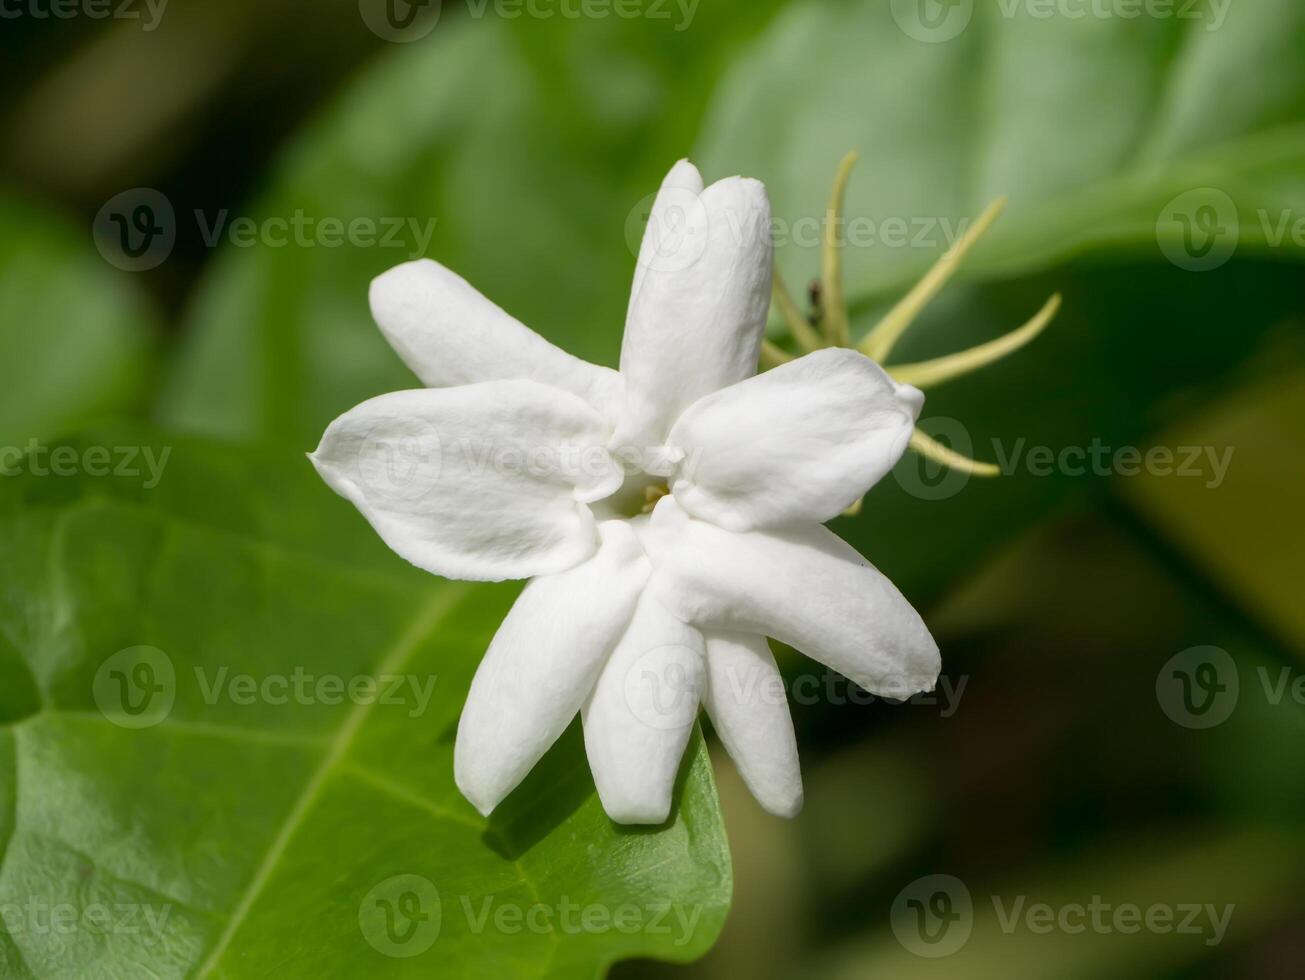 wit van jasmijn bloem. foto